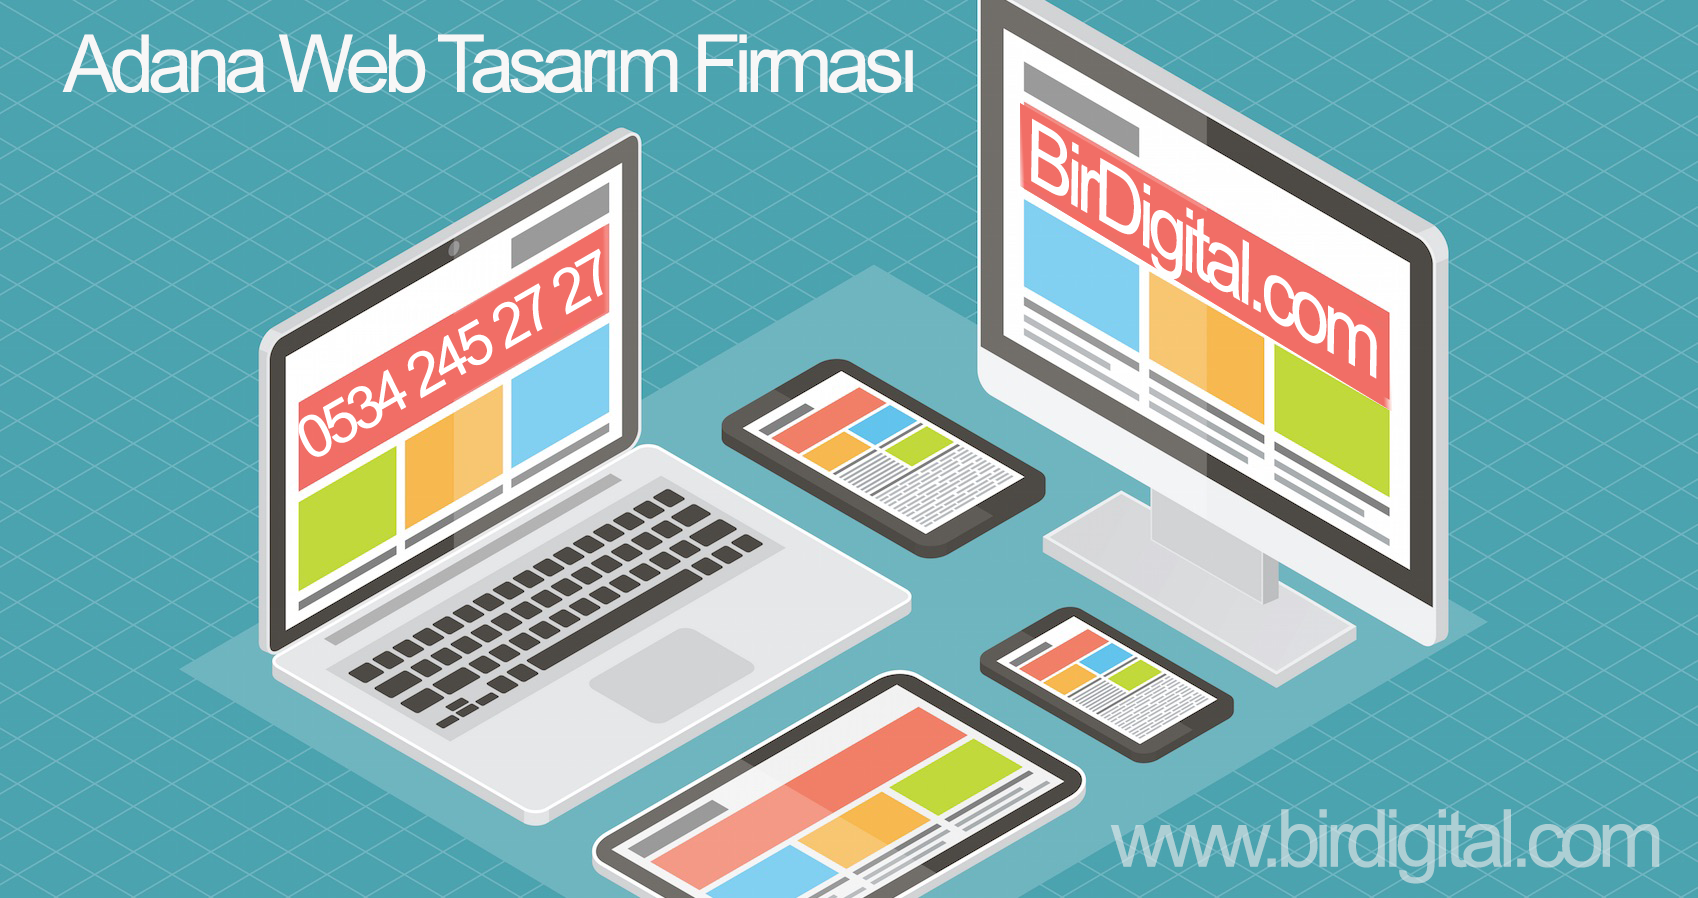 Adana Web Tasarım Şirketi